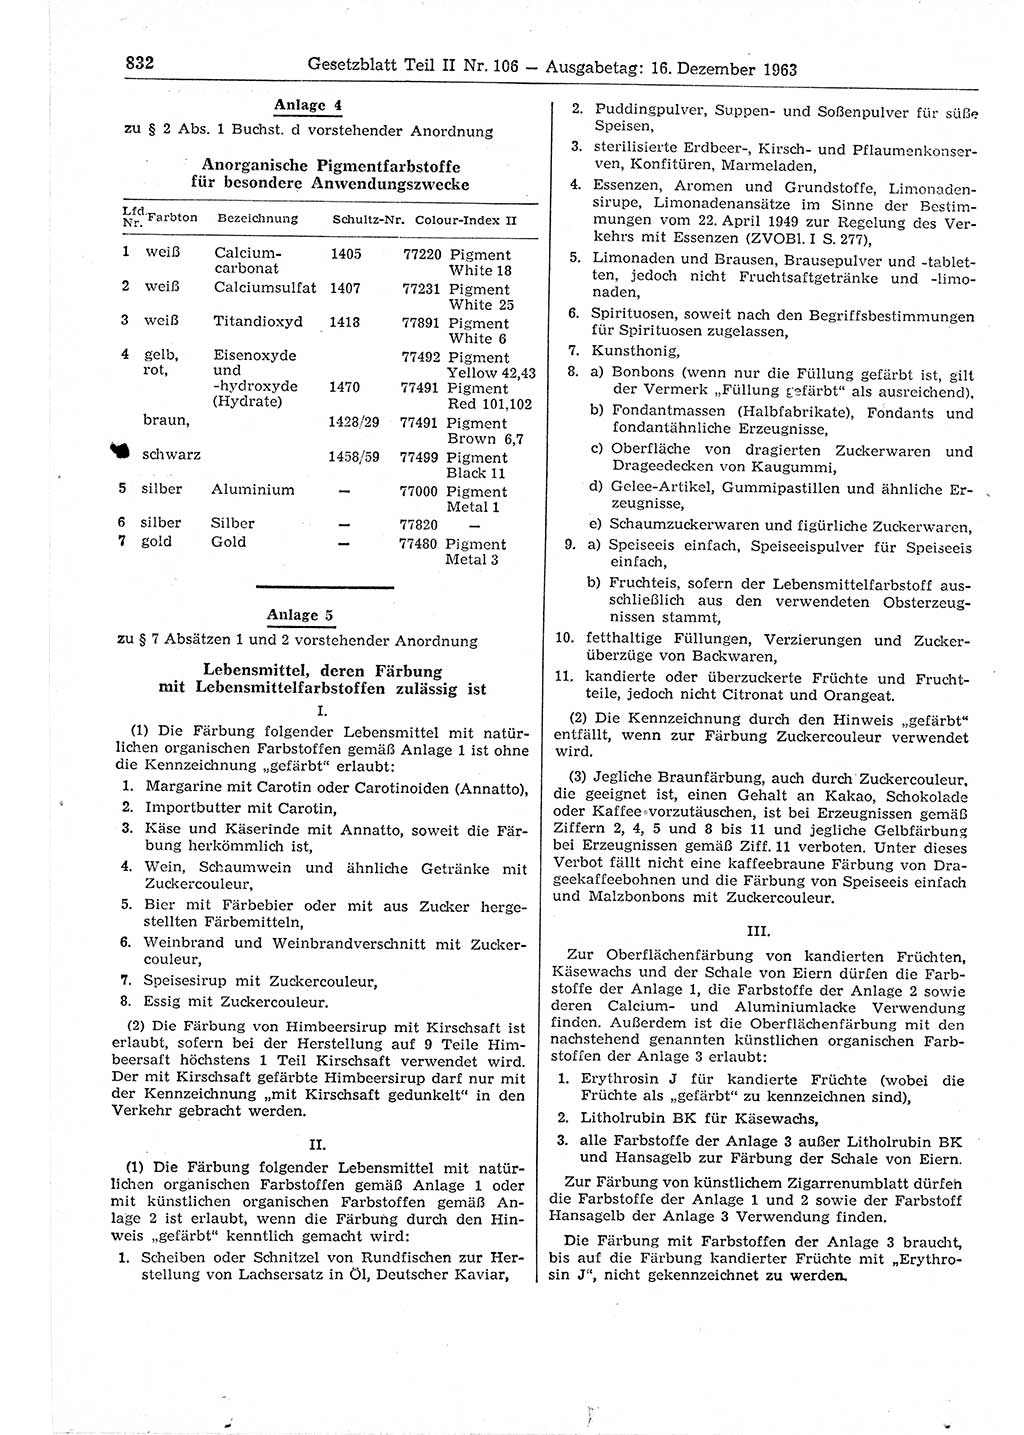 Gesetzblatt (GBl.) der Deutschen Demokratischen Republik (DDR) Teil ⅠⅠ 1963, Seite 832 (GBl. DDR ⅠⅠ 1963, S. 832)